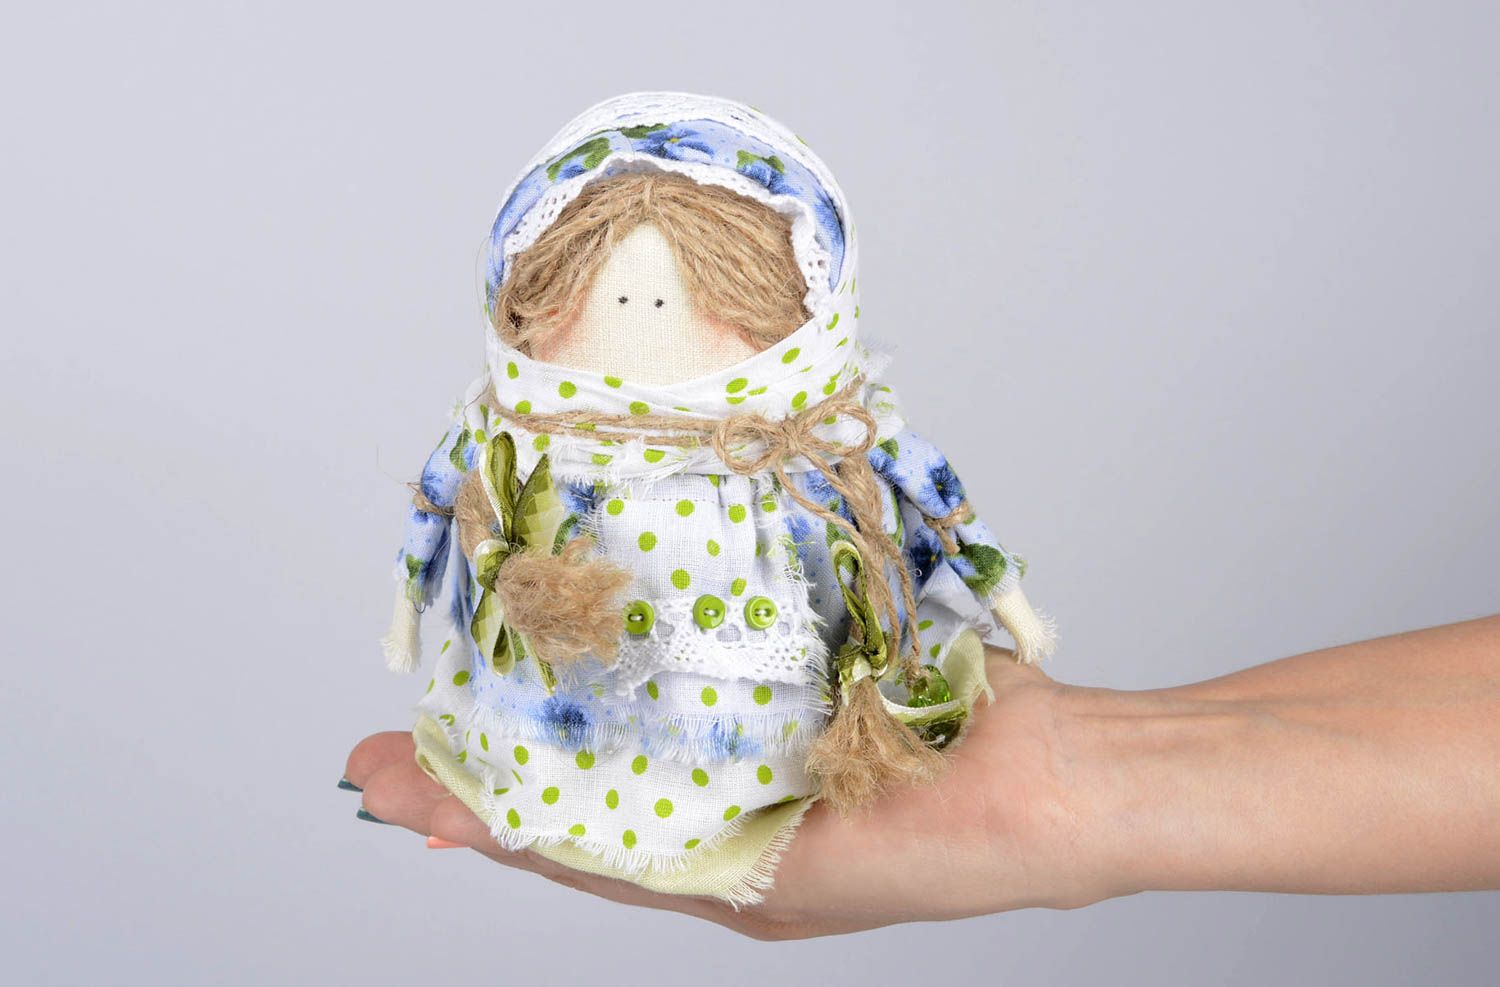  Muñeca de tela hecha a mano juguete tradicional con granos objeto de decoración foto 1